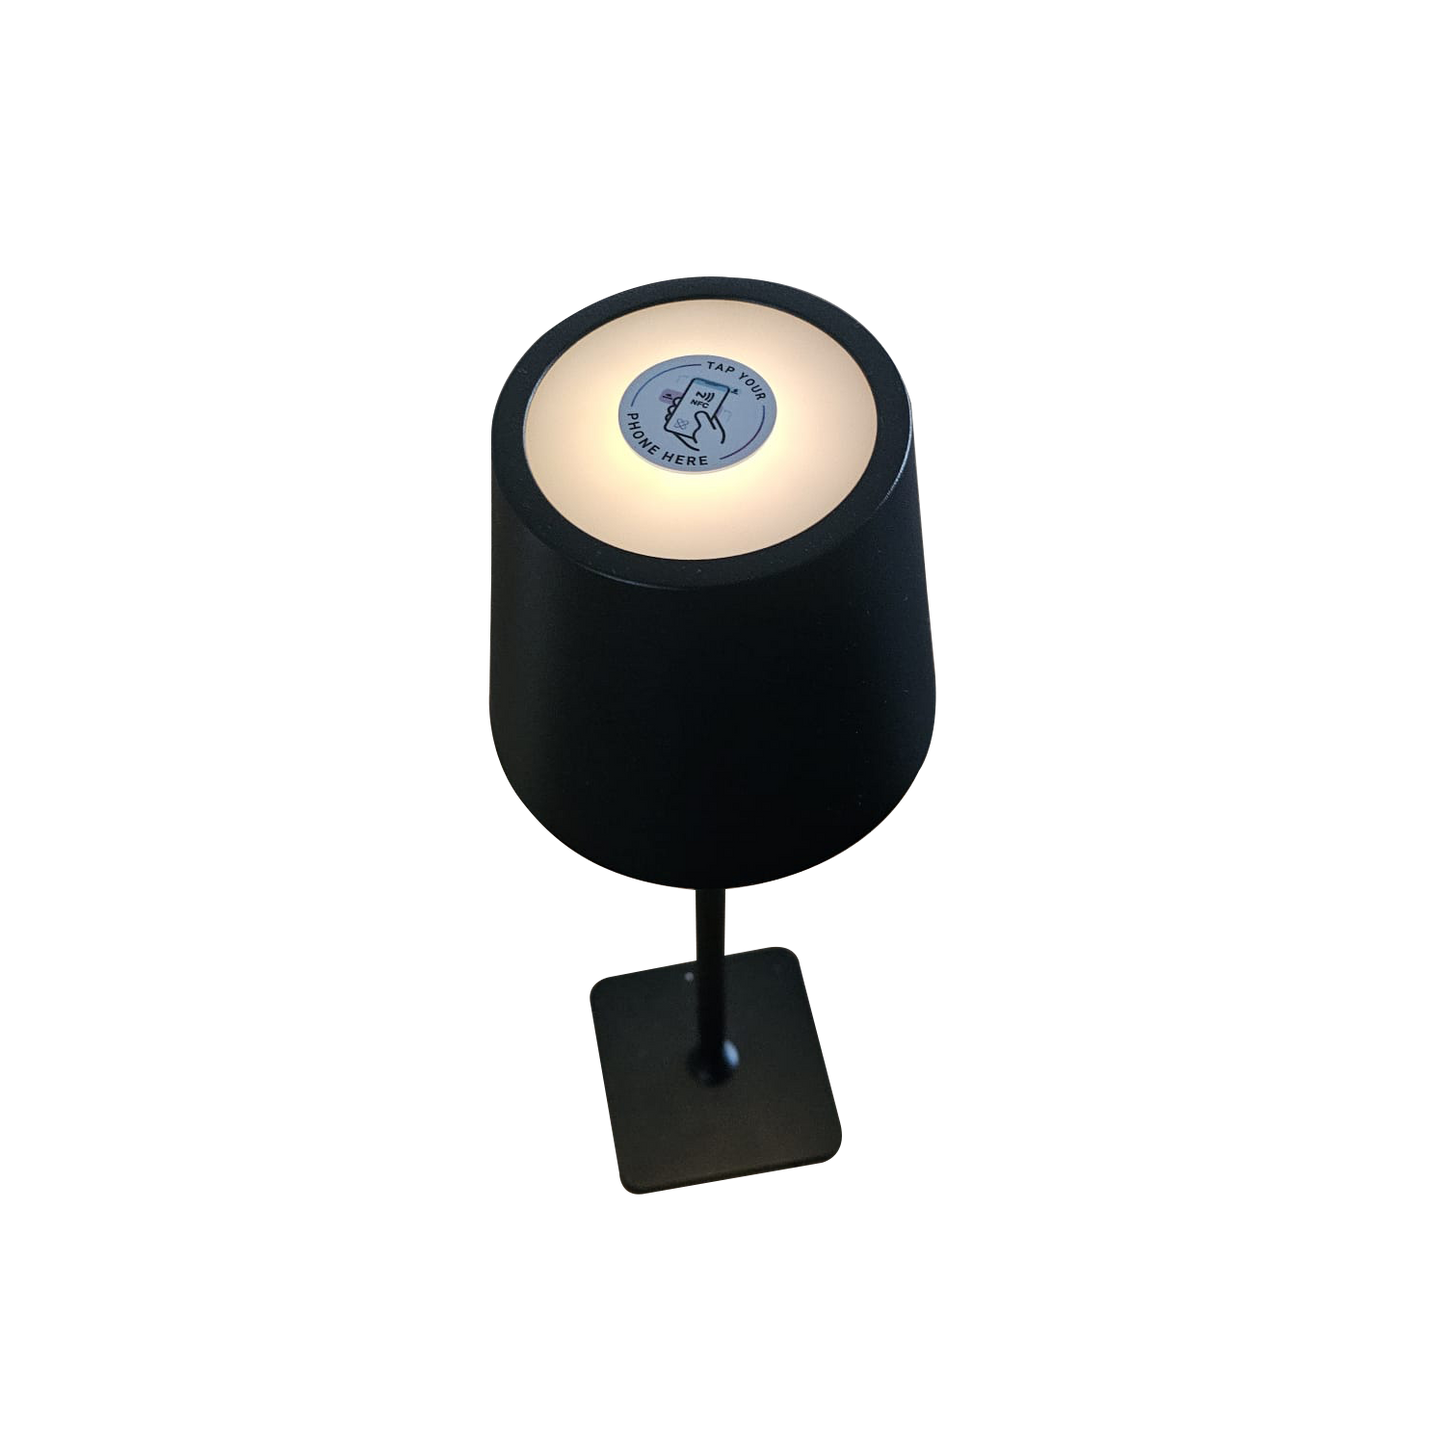 Lampe mit NFC-Sticker